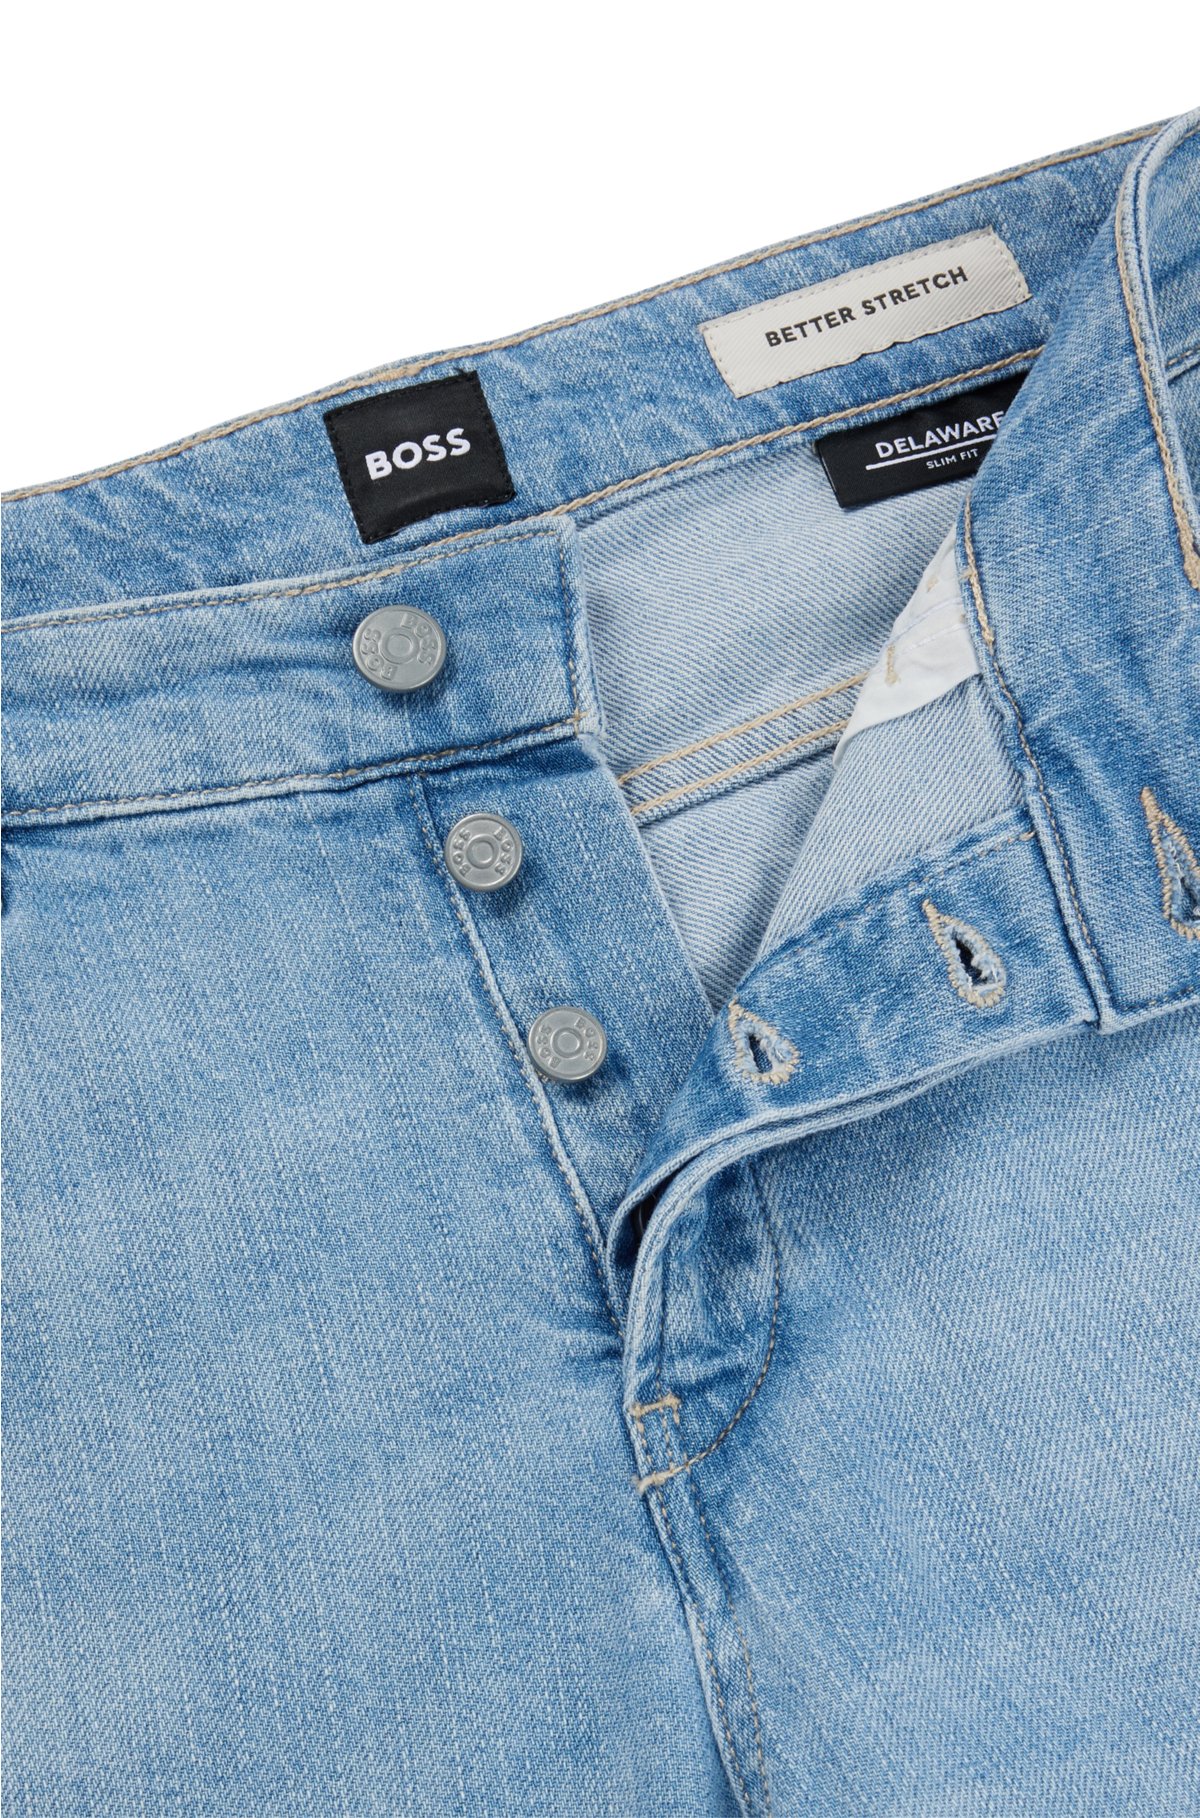 BOSS - Slim-fit jeans in blue stretch denim